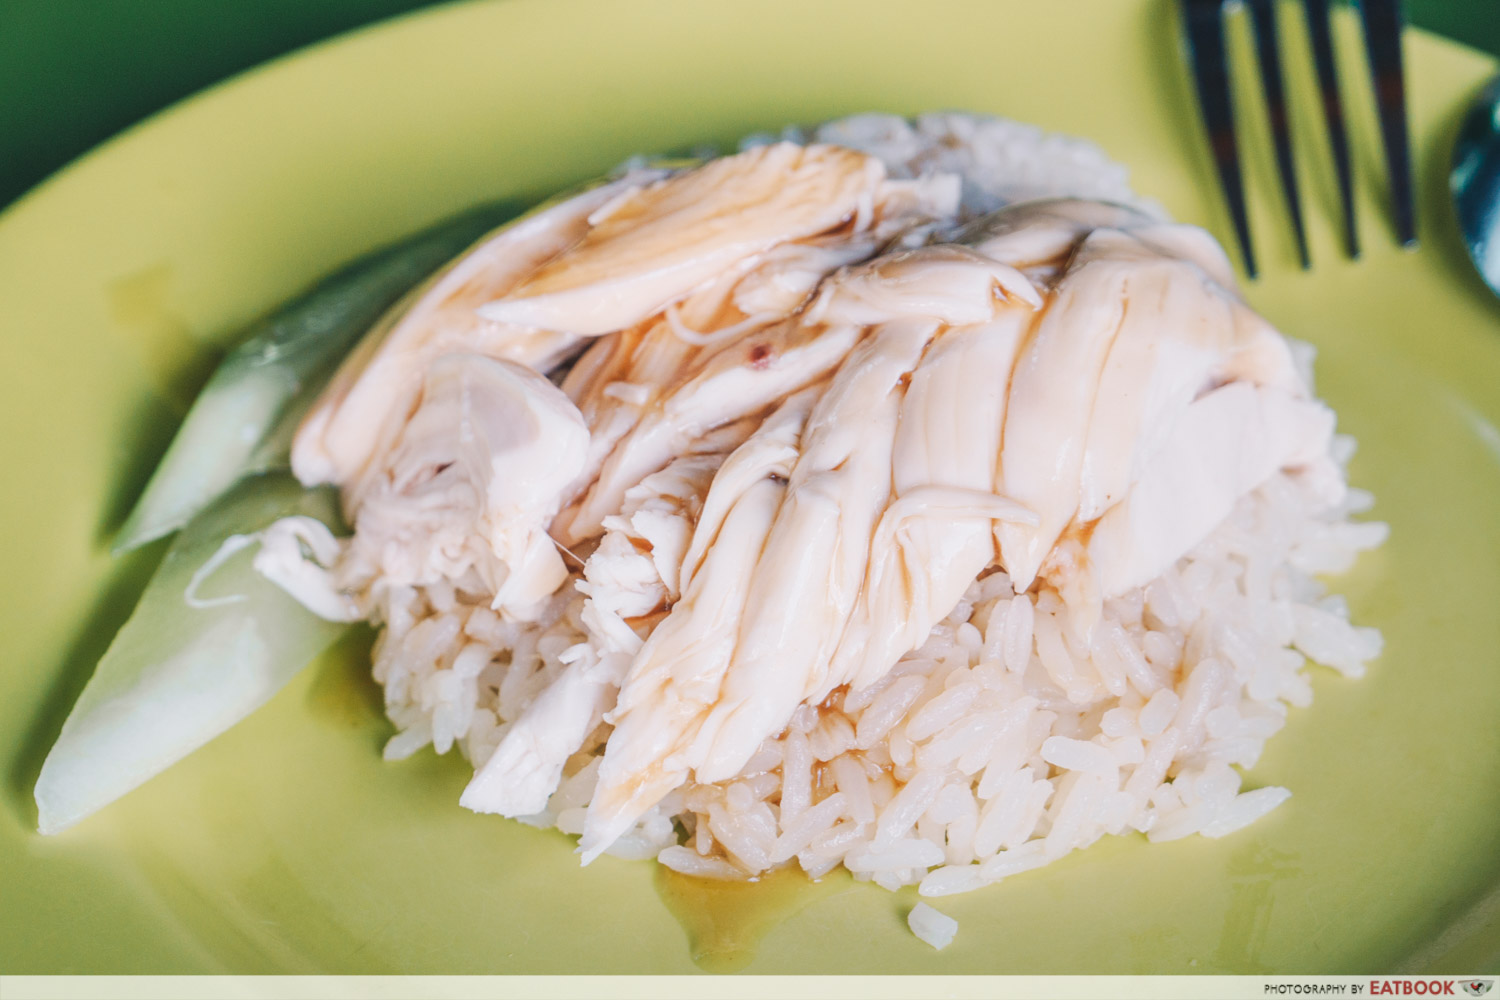 Tian Tian Chicken Rice